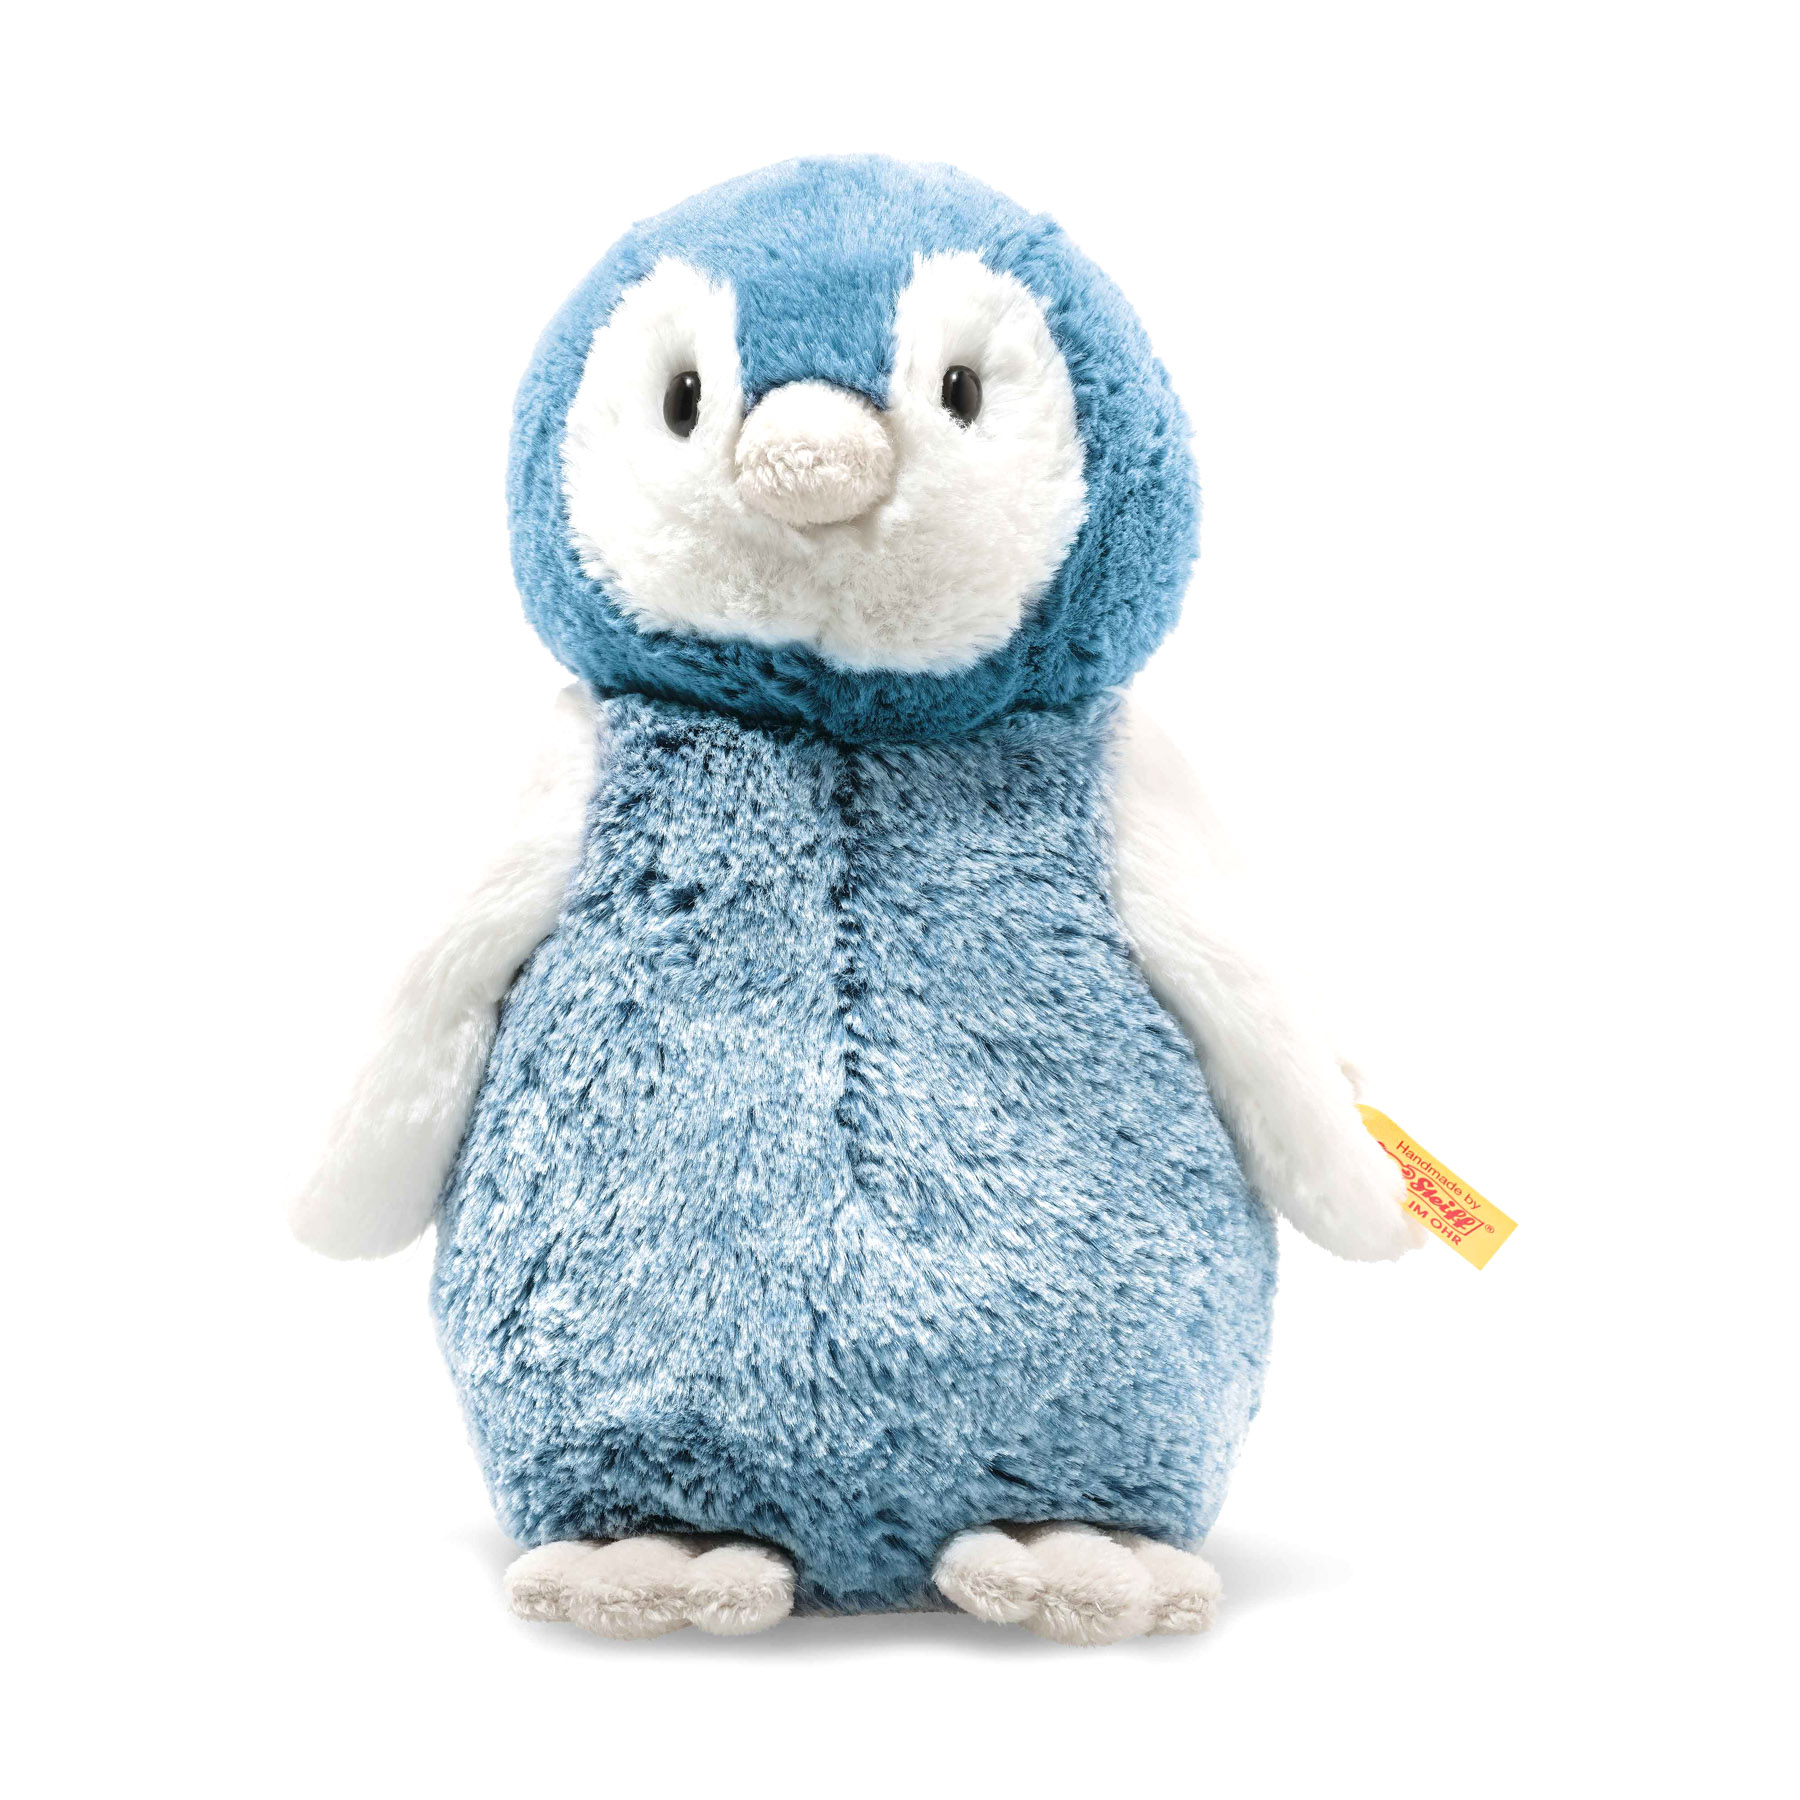 Peluche Pinguino Paule 22 cm - Steiff